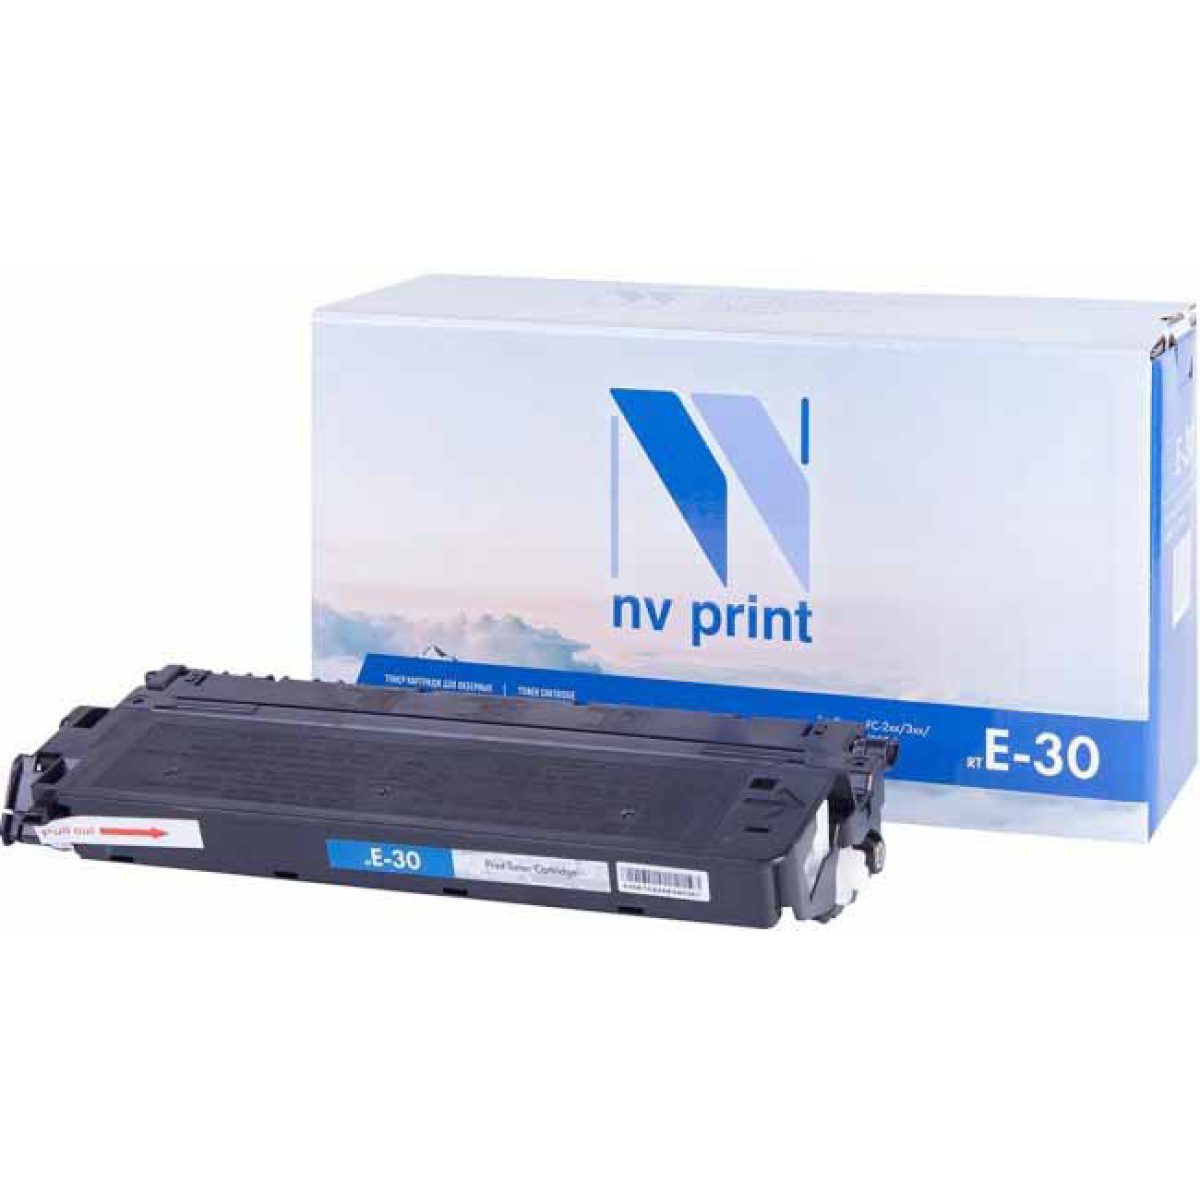 Купить картридж NV Print E-30 черный по адекватной цене — Digit-Mall